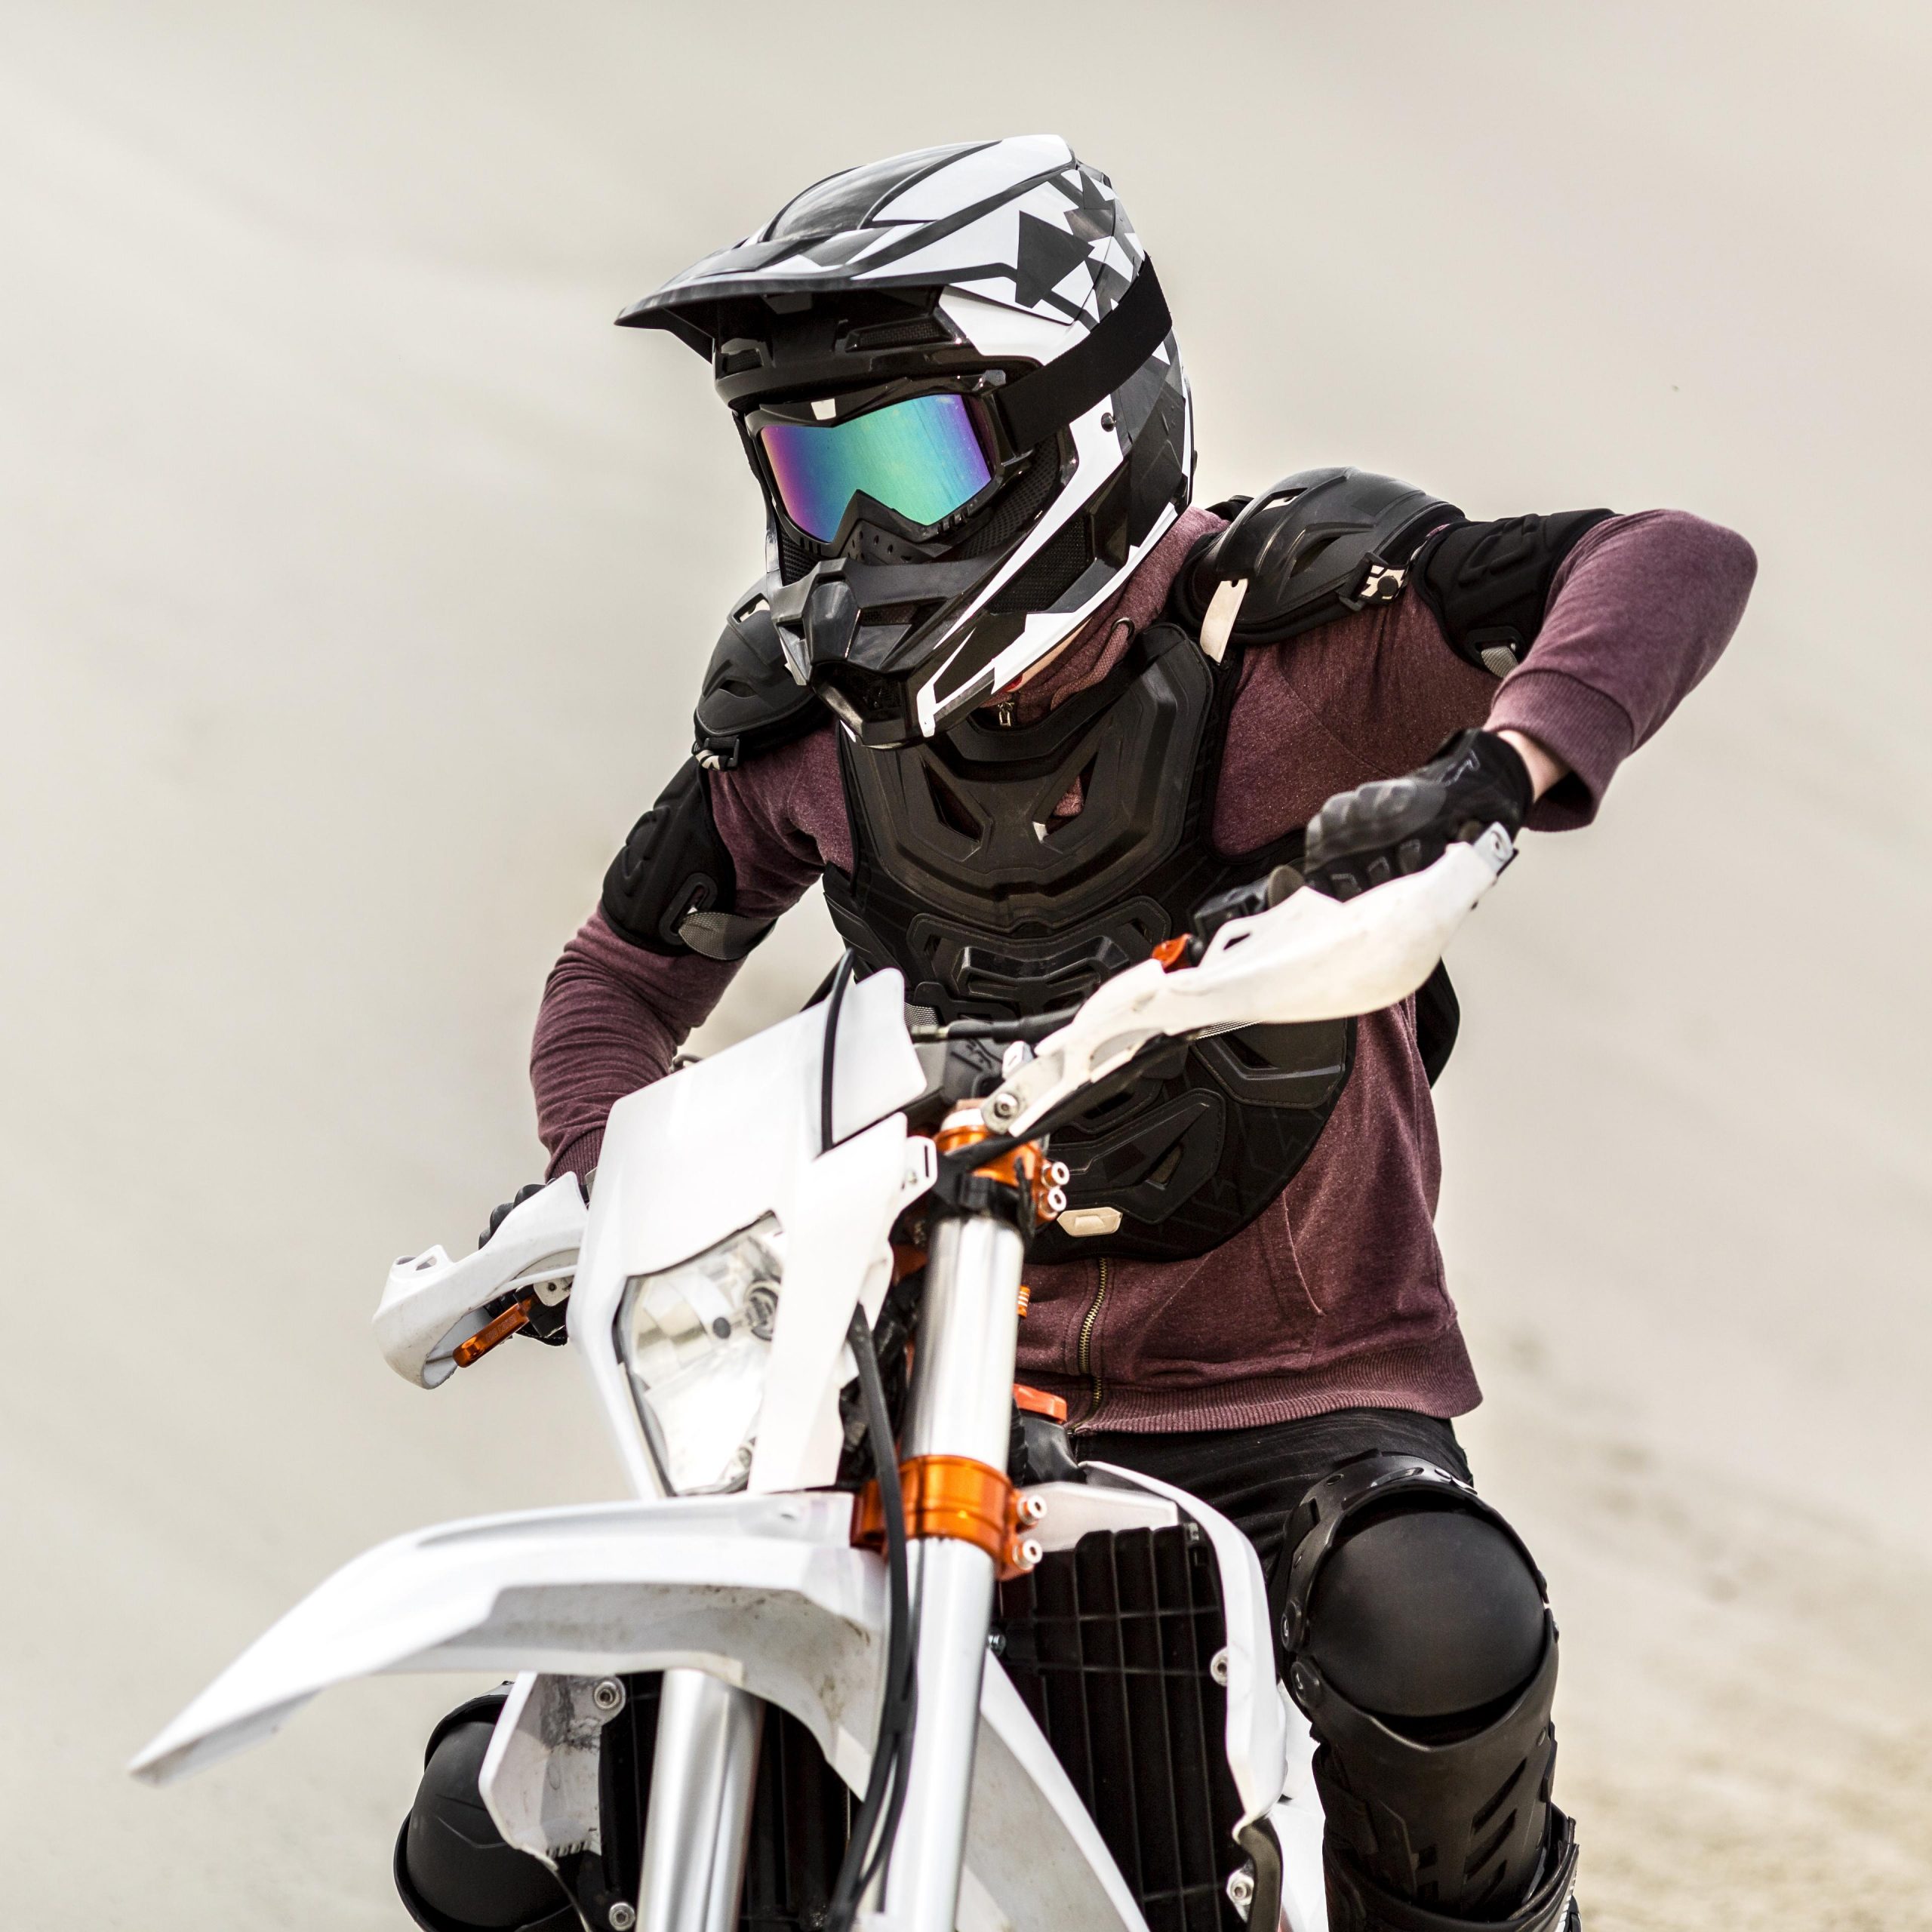 Mulheres e motocicletas: 5 nomes famosos do motocross internacional - Zelão  Racing - Blog